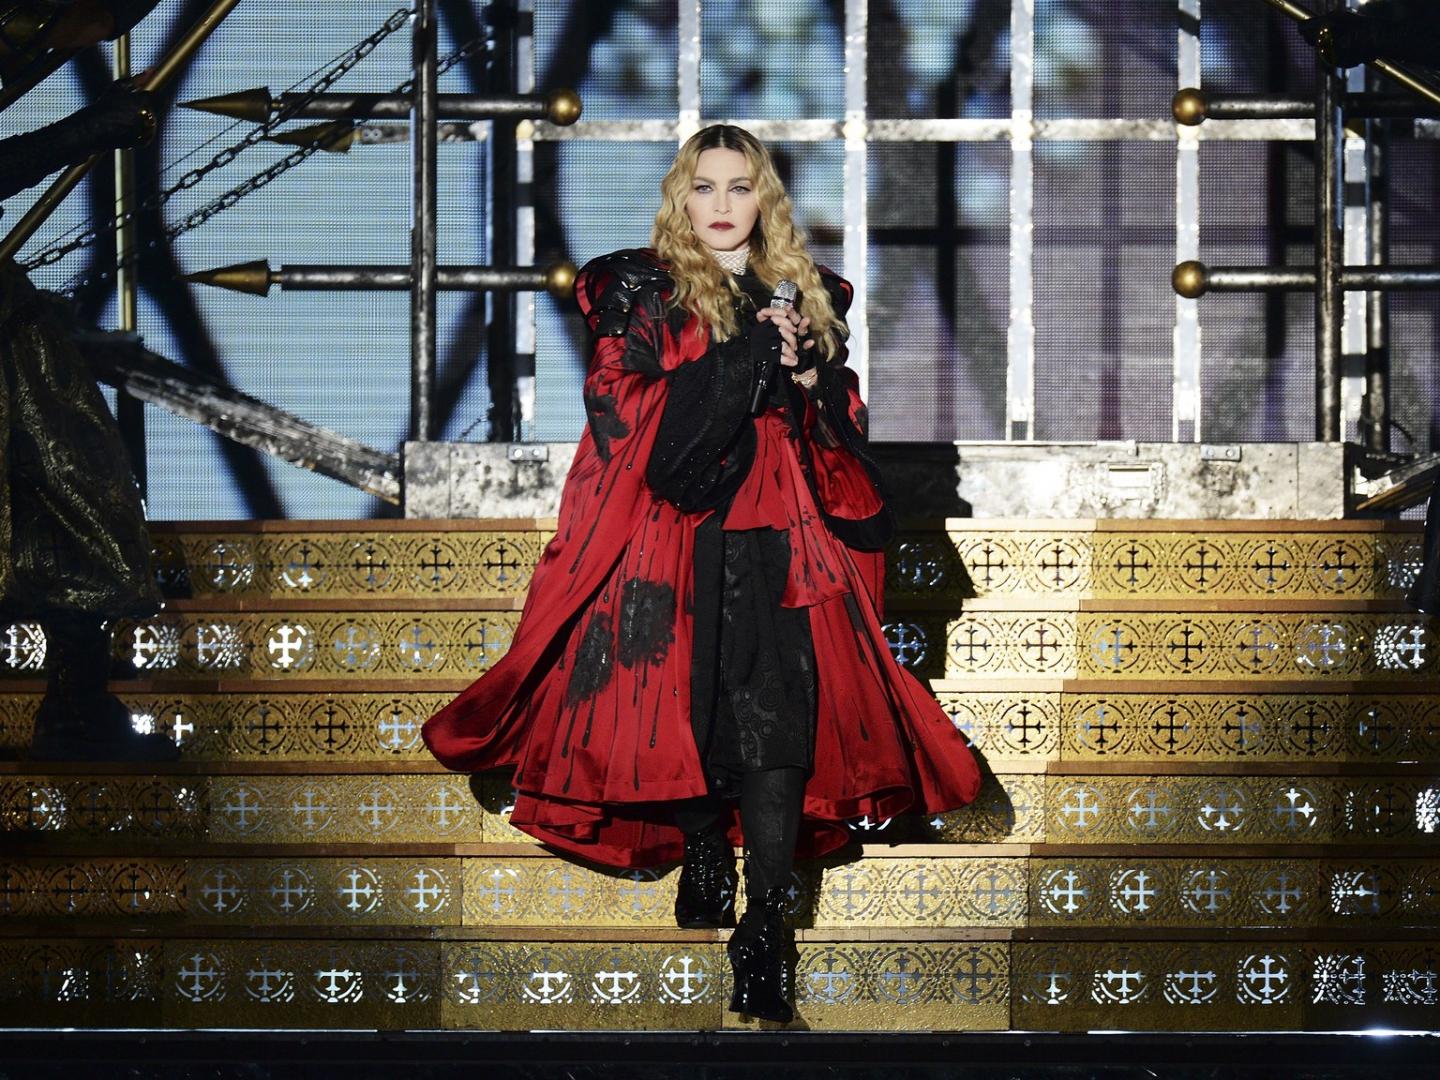 Ao completar 60 anos, Madonna transgride apenas por existir